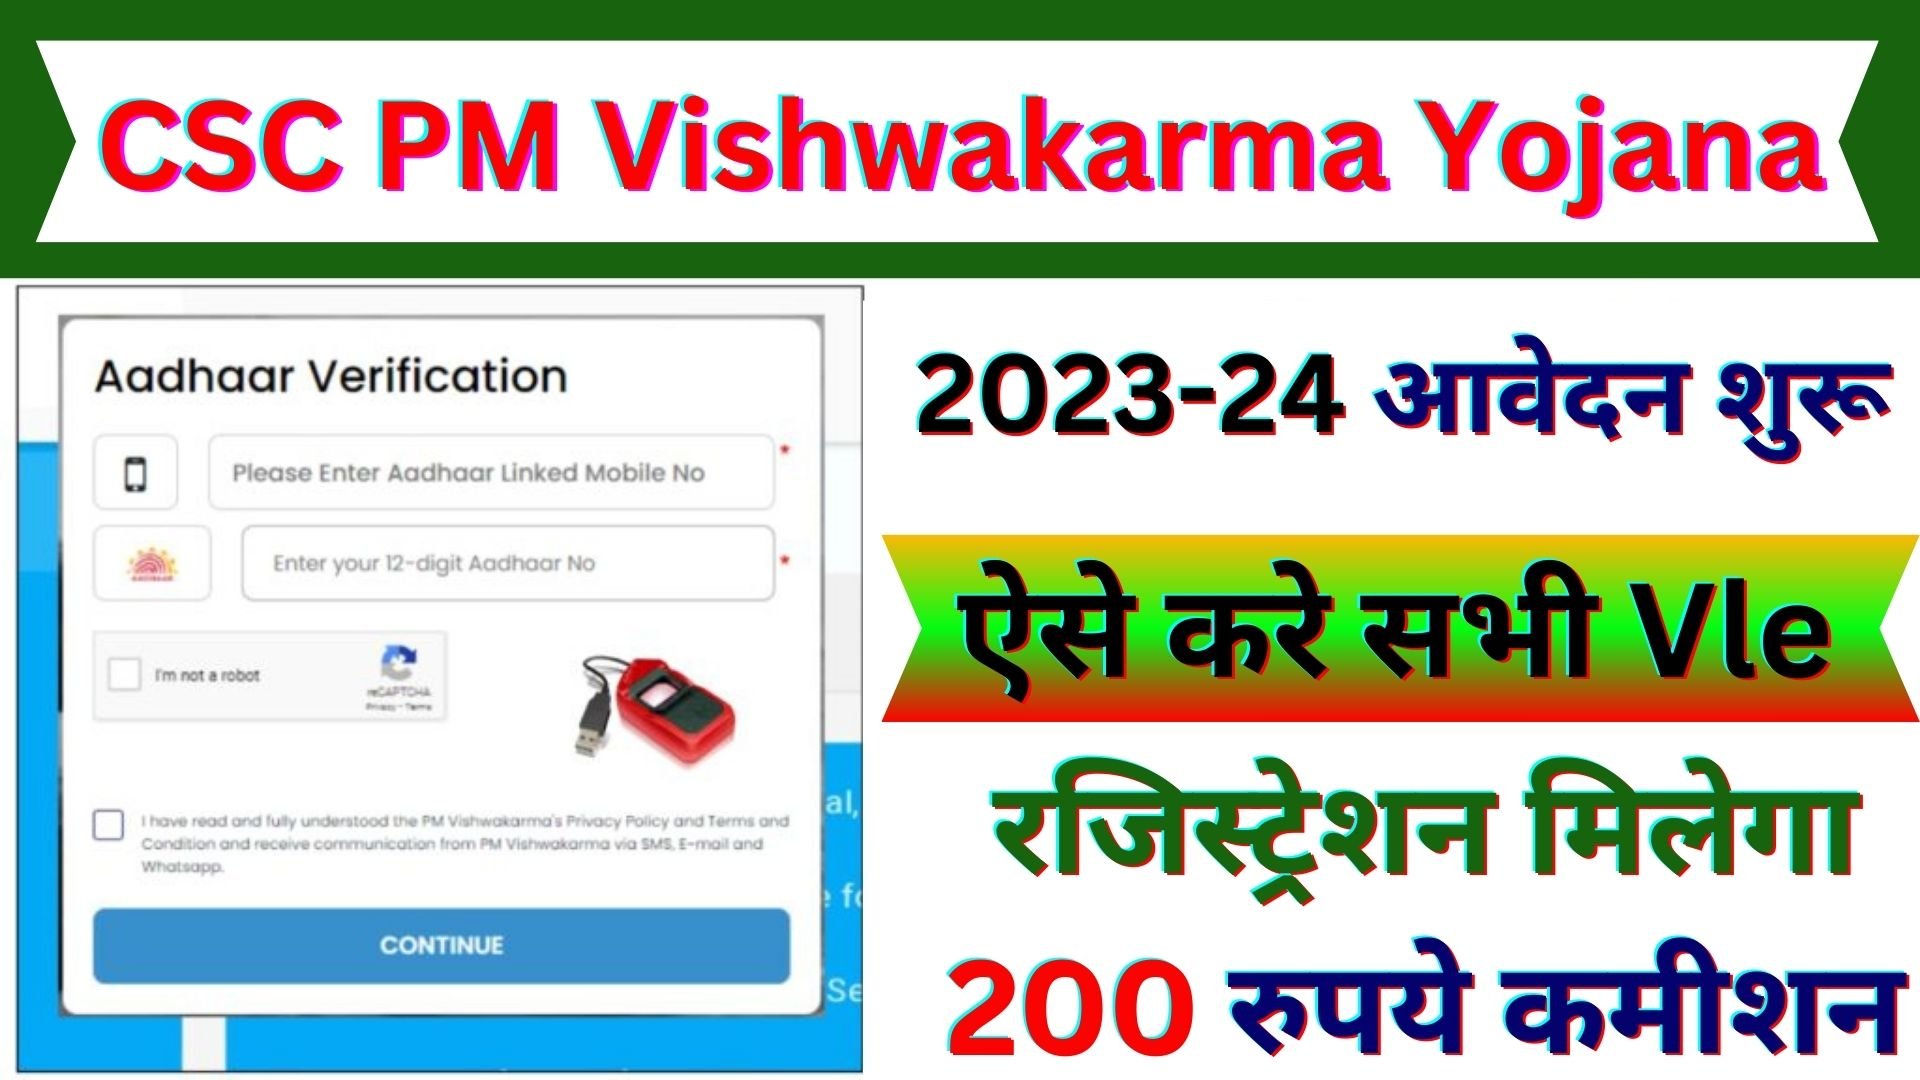 PM Vishwakarma Yojana CSC Login 2023-24 | PM Vishwakarma Yojana online apply csc login | csc pm Vishwakarma